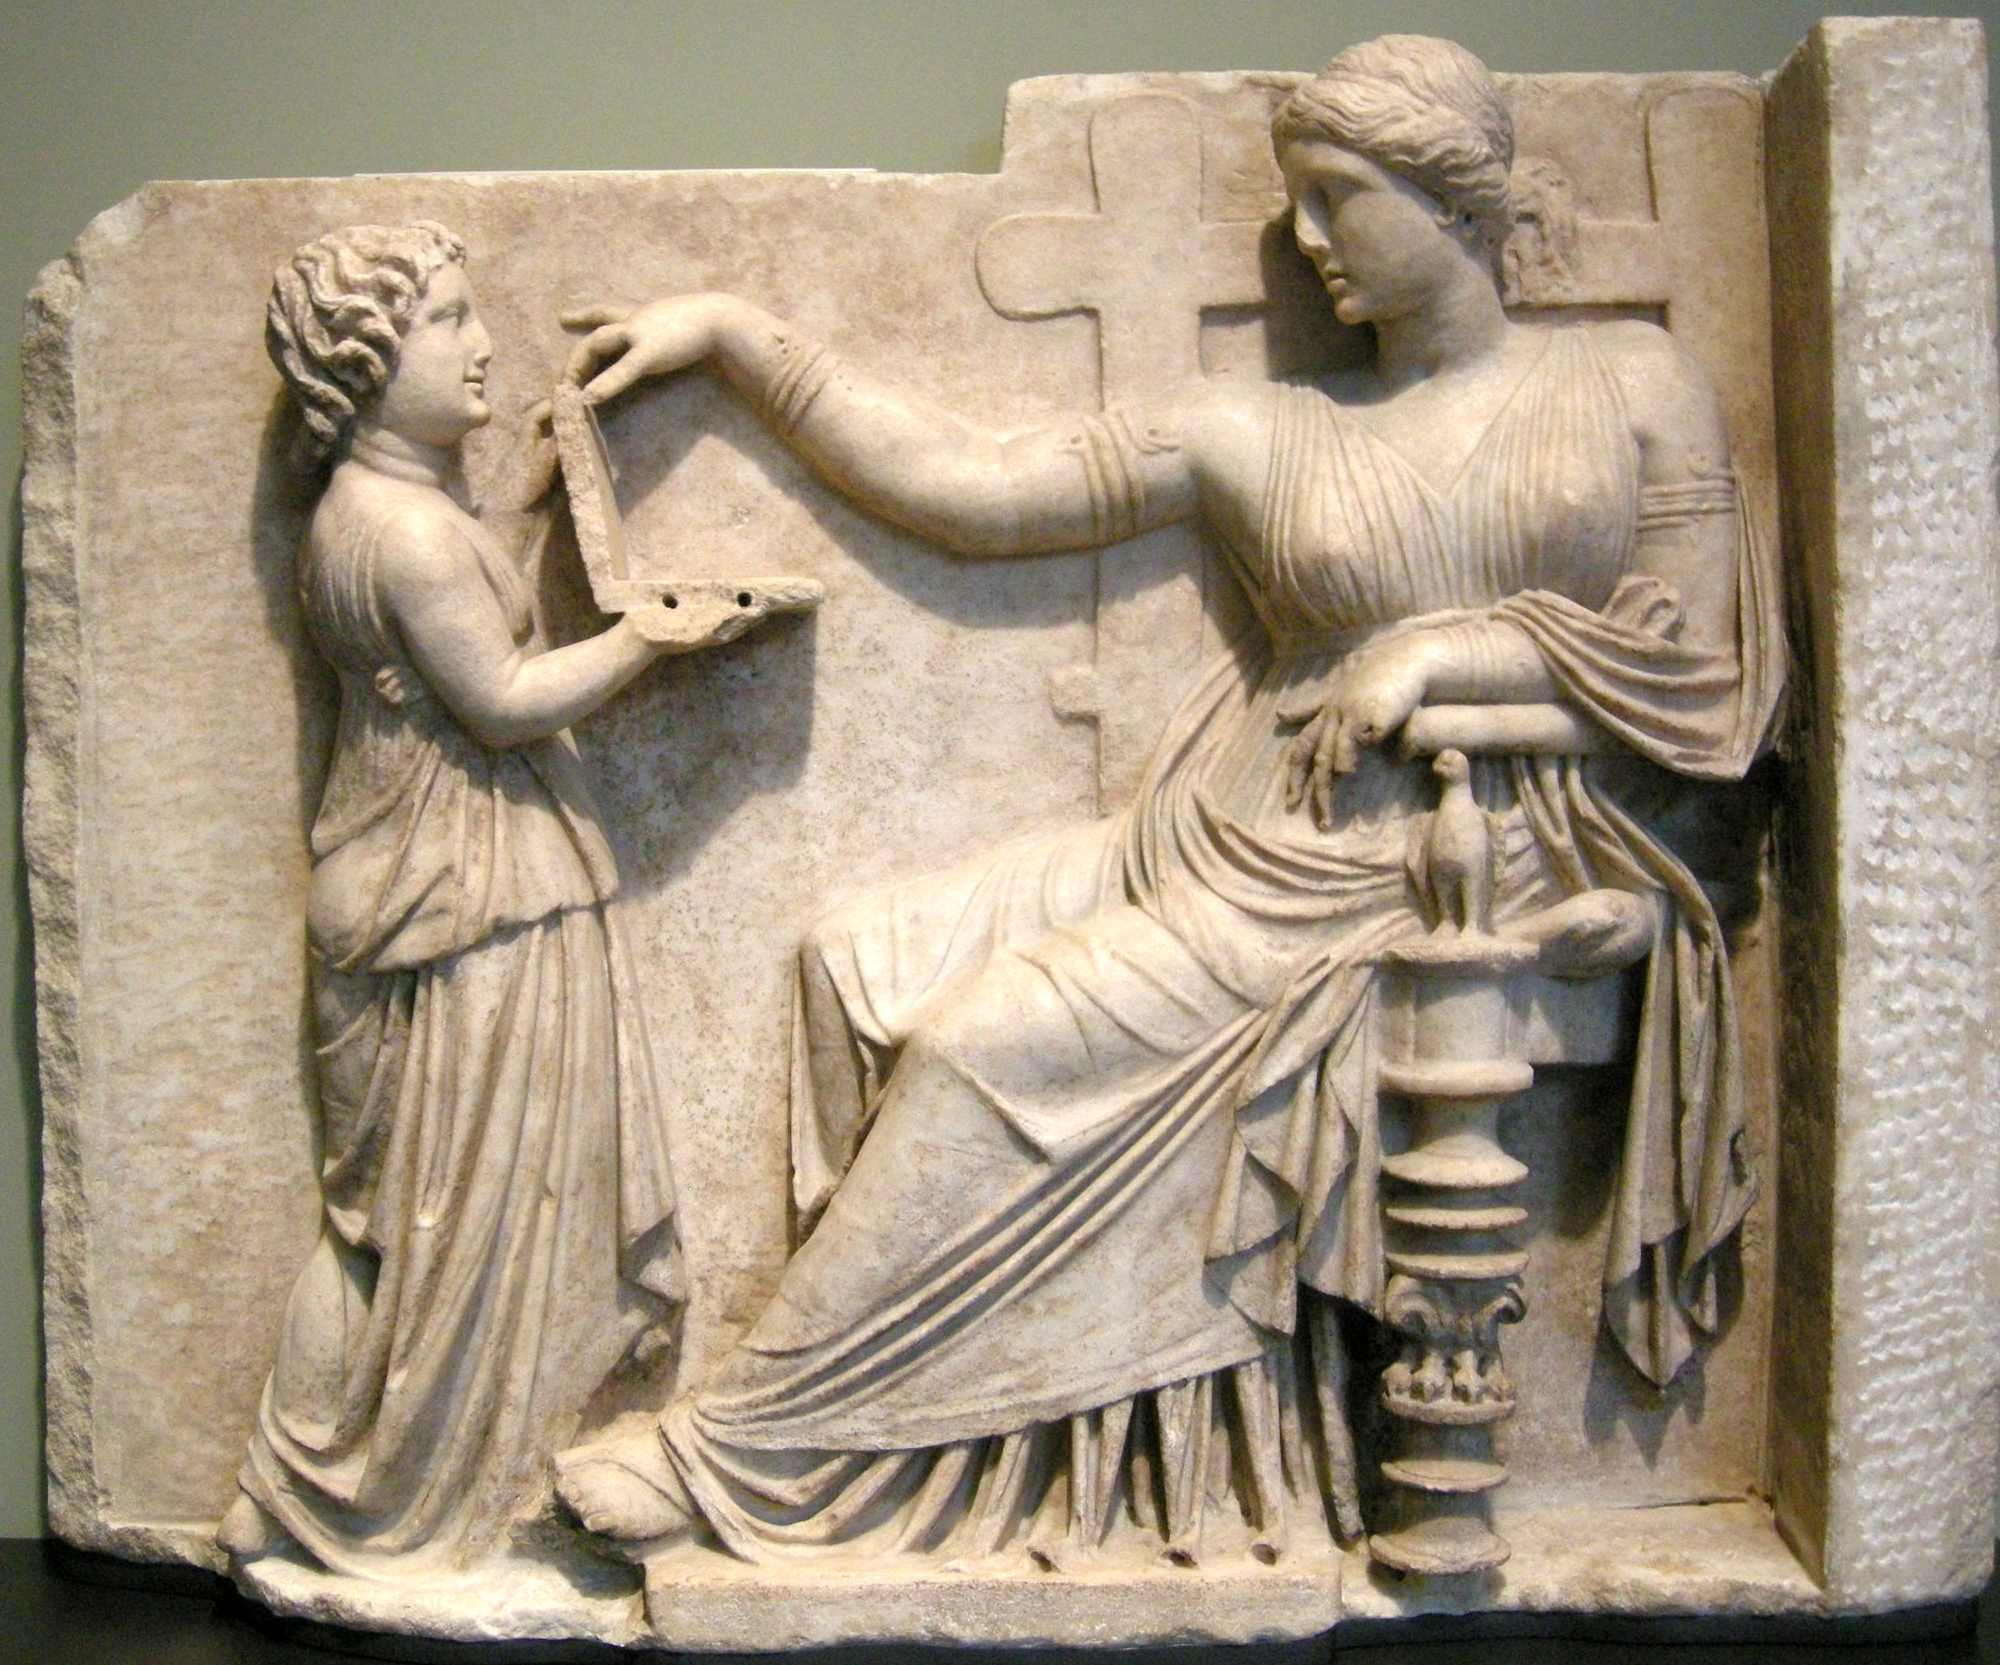 Helenistik dönem tahtta oturan bir kadın ve hizmetçisi, mermer mezar taşı; Doğu Yunanistan. Yaklaşık olarak MS 100